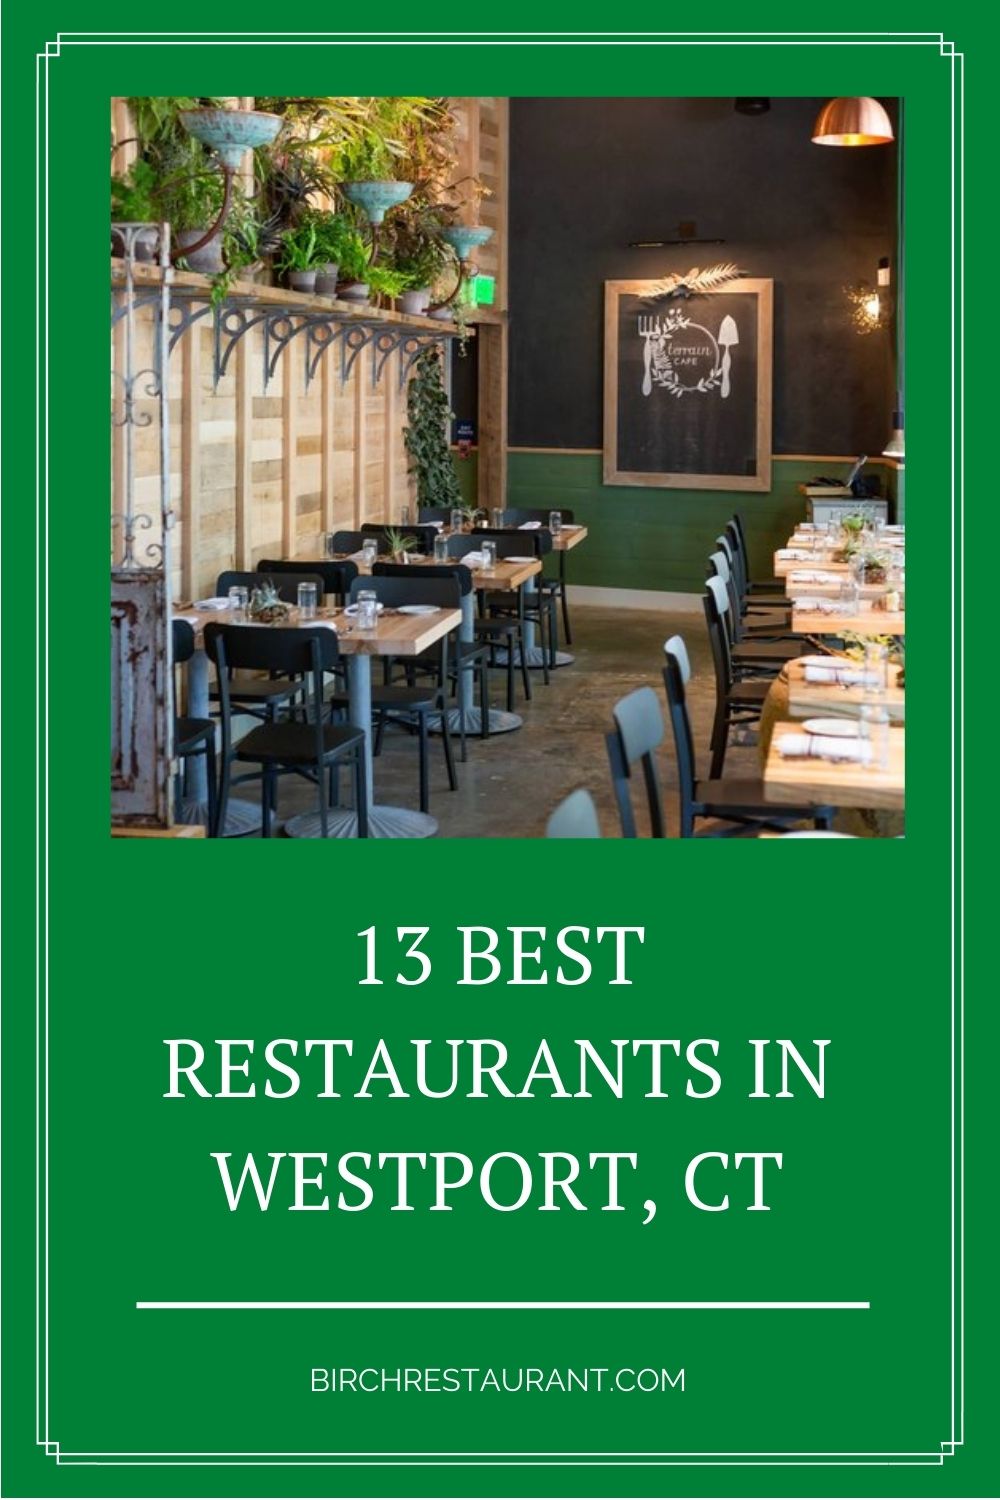 Best Restaurants in Westport